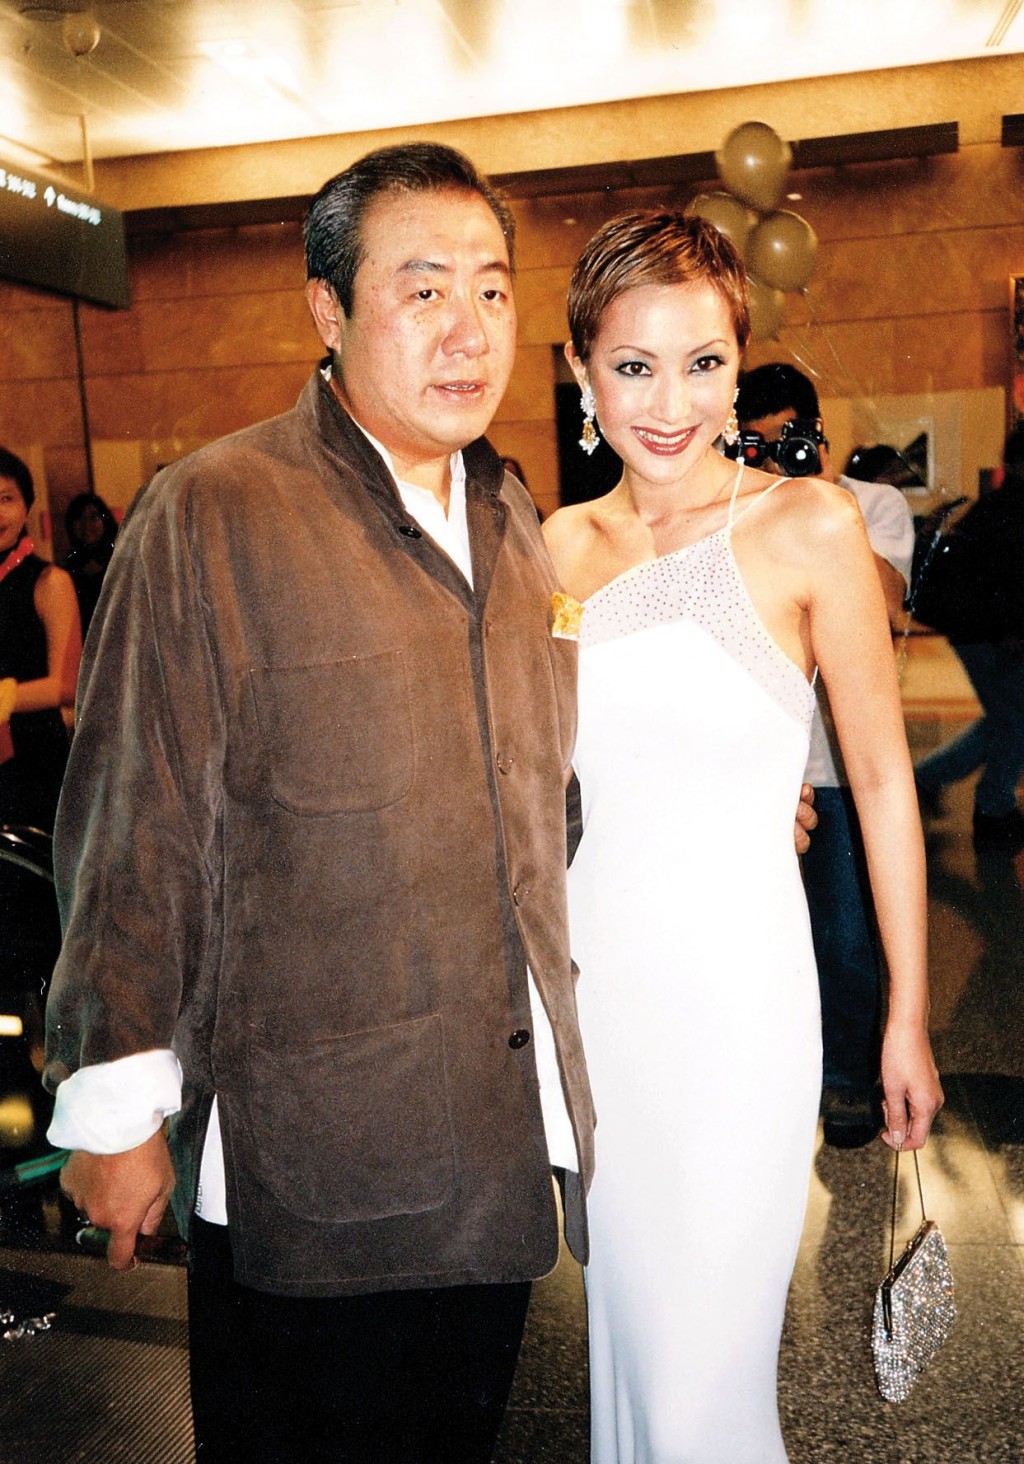 薛芷伦于十多年前与富商马清伟离婚。